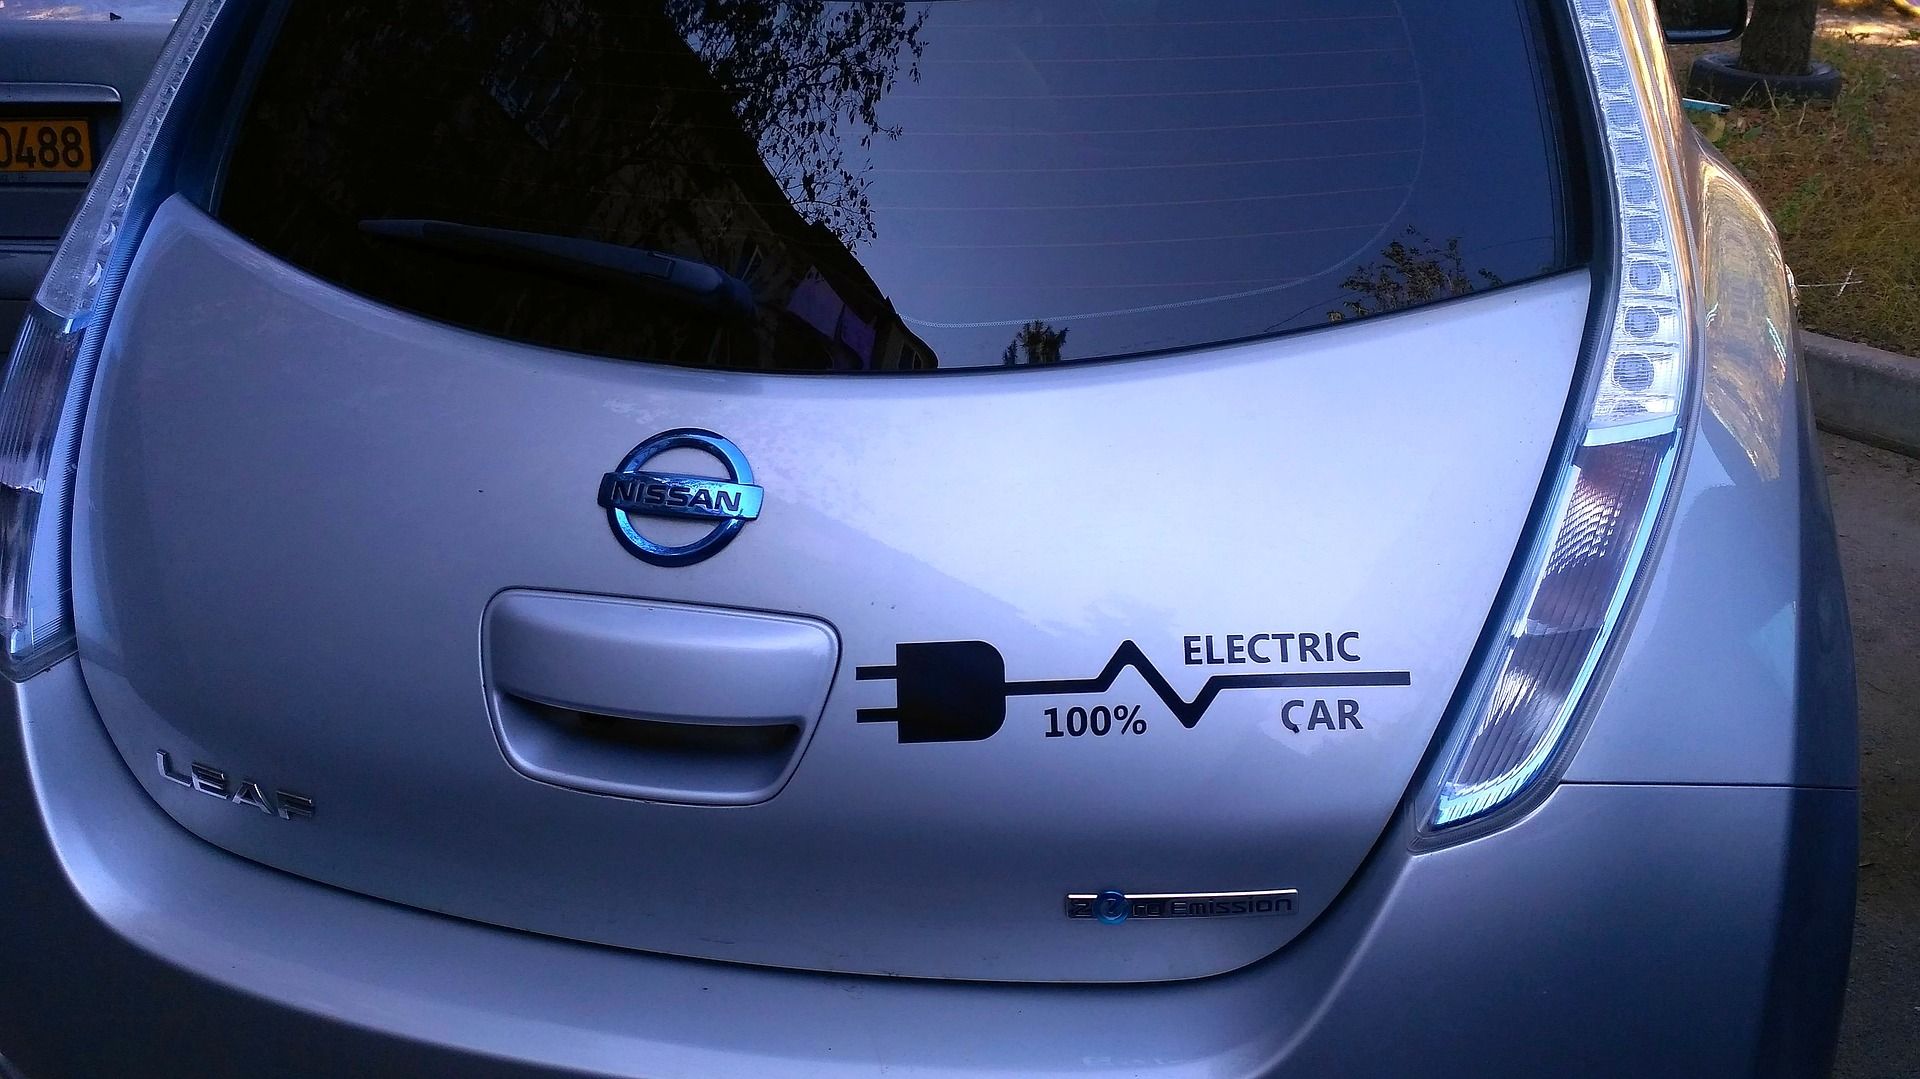  Już za rok ruszy miejska wypożyczalnia aut elektrycznych. Kluczyków nie będzie